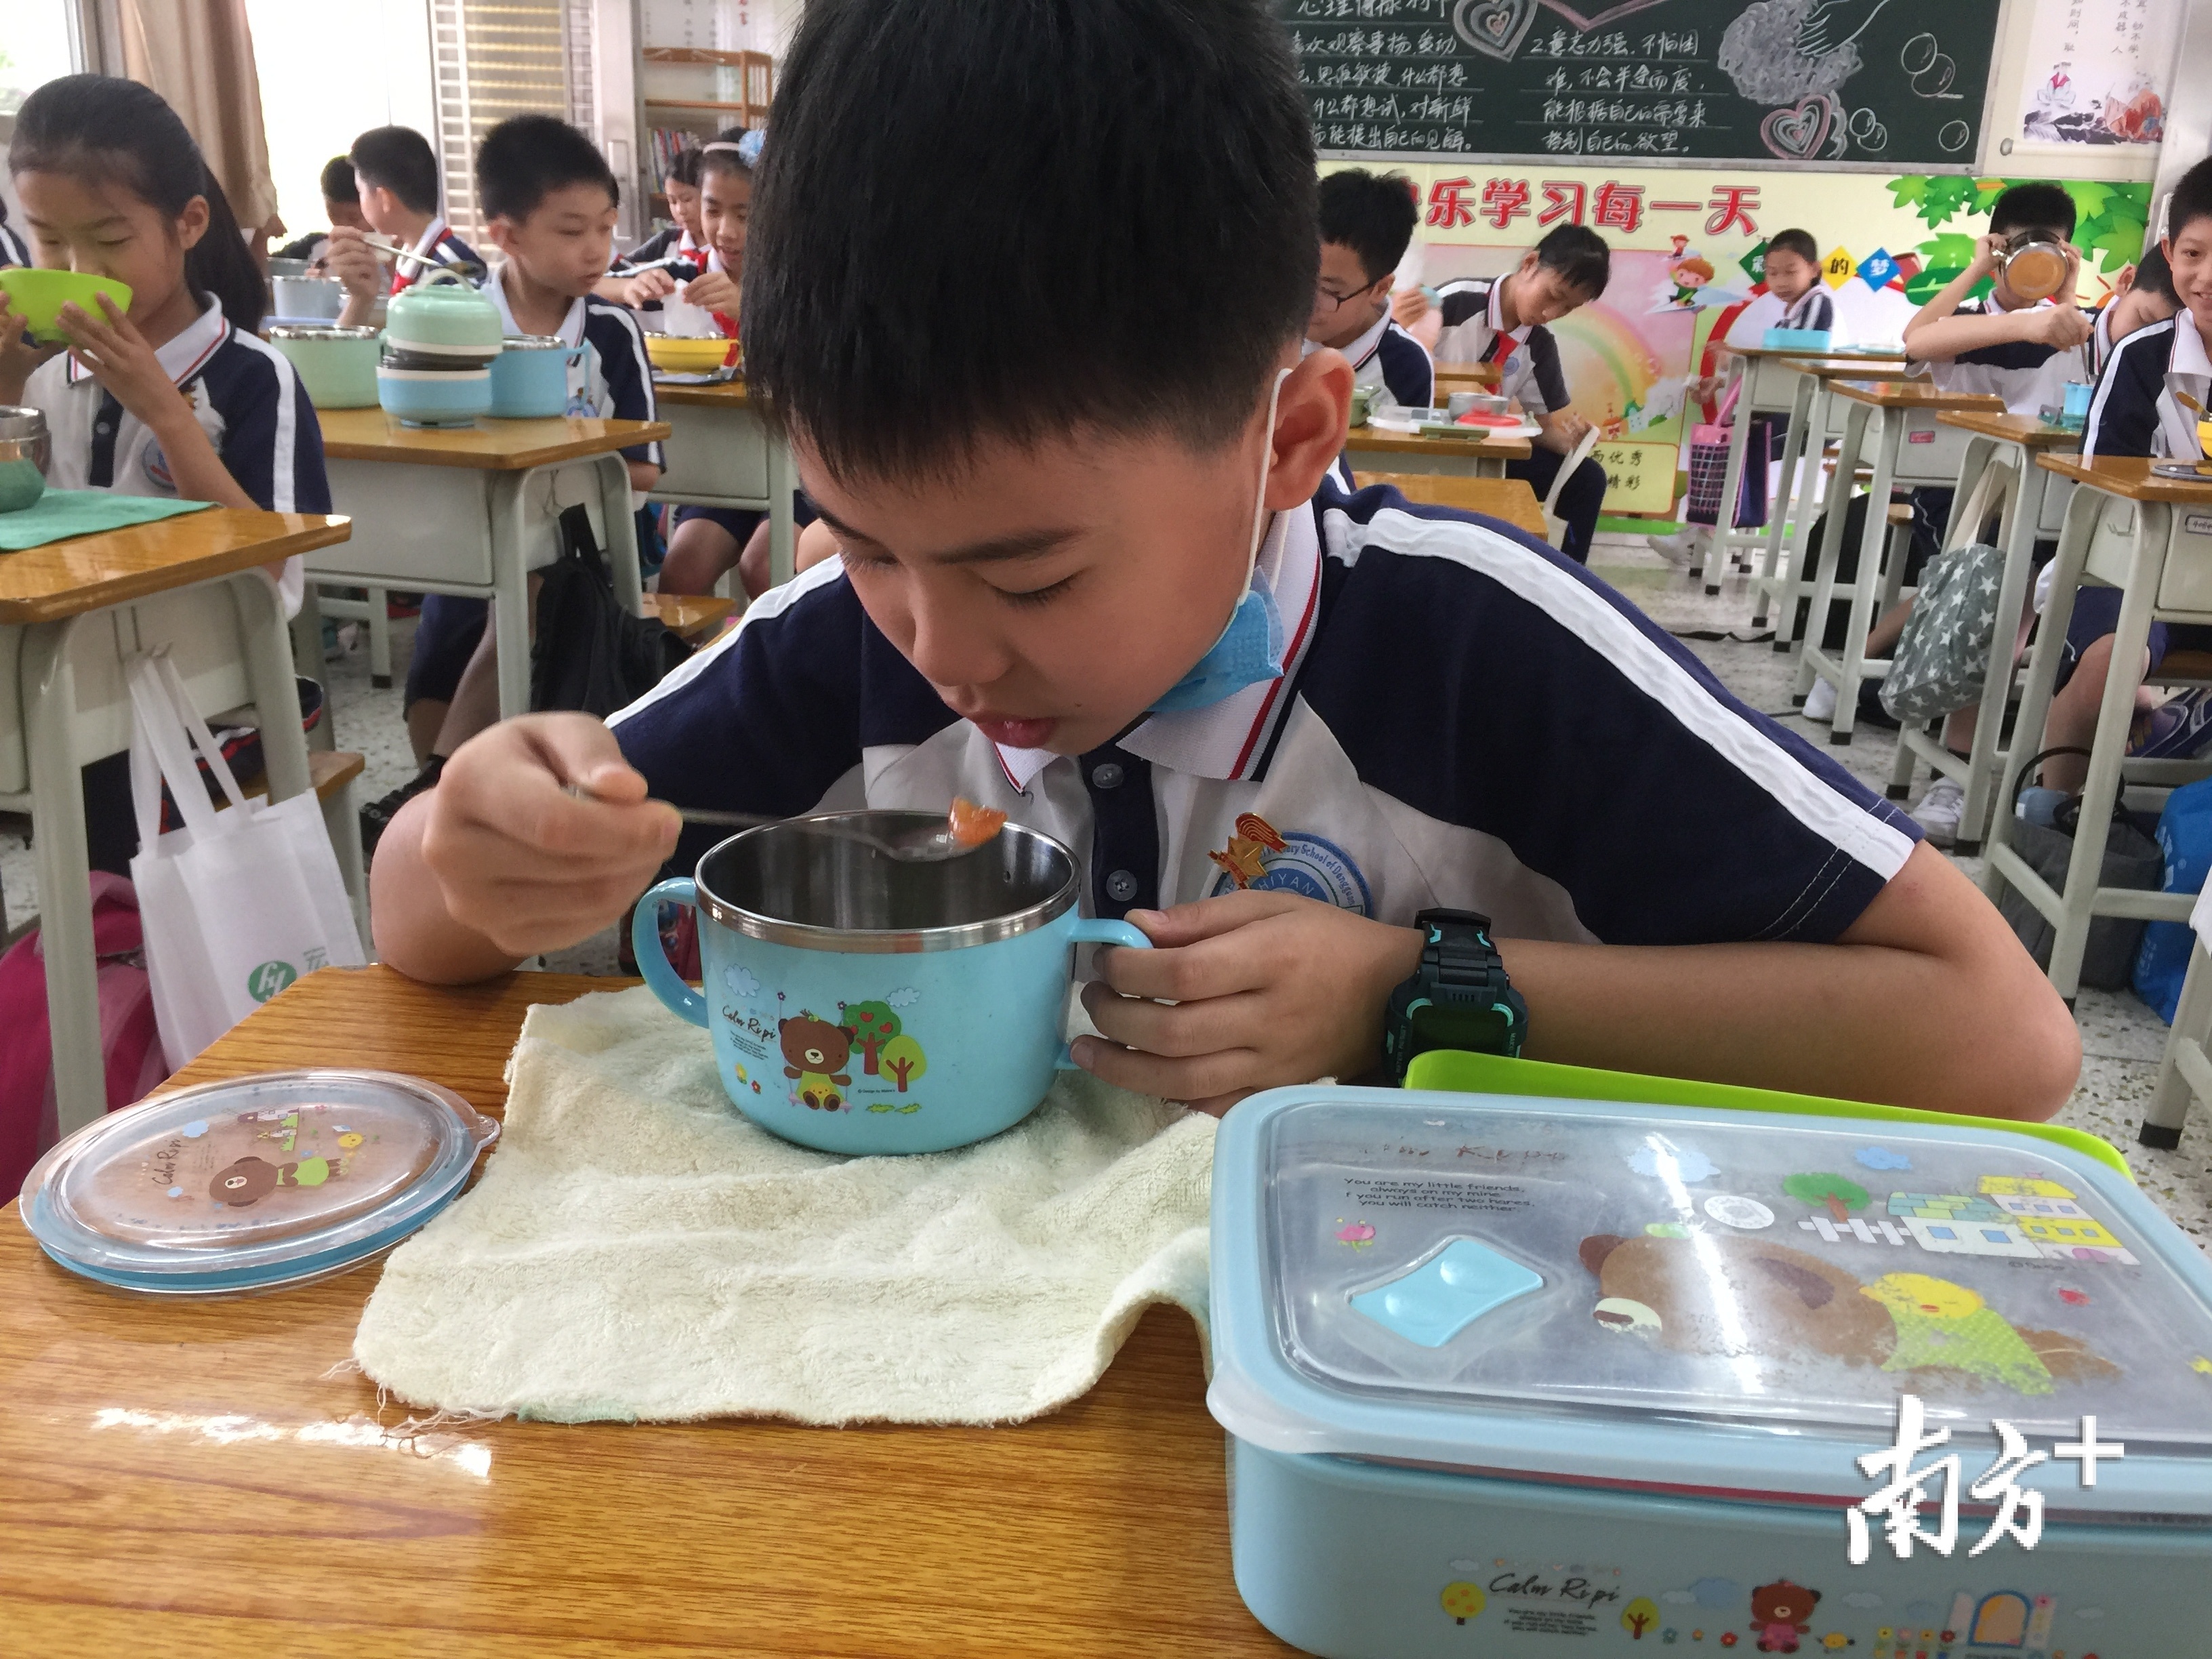 莞城实验小学中午学生统一午餐。